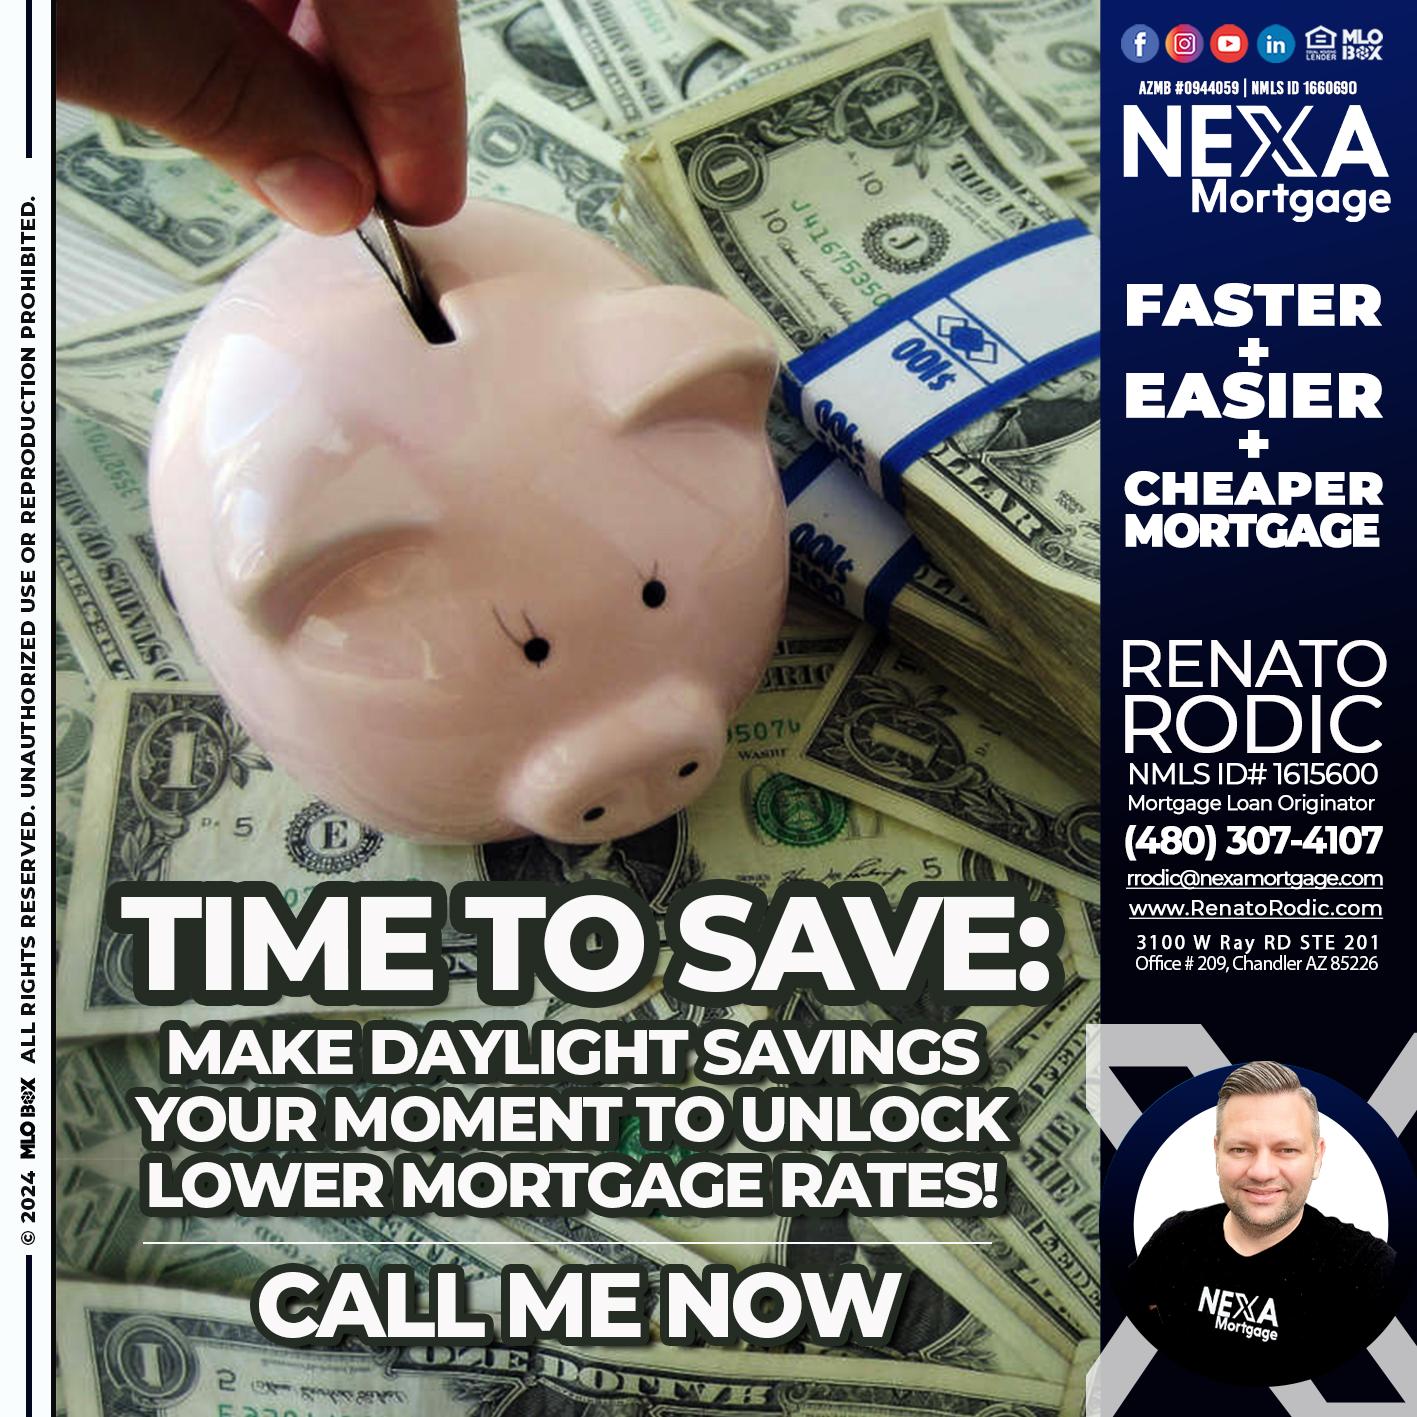 time to save - Renato Rodic -Mortgage Loan Originator